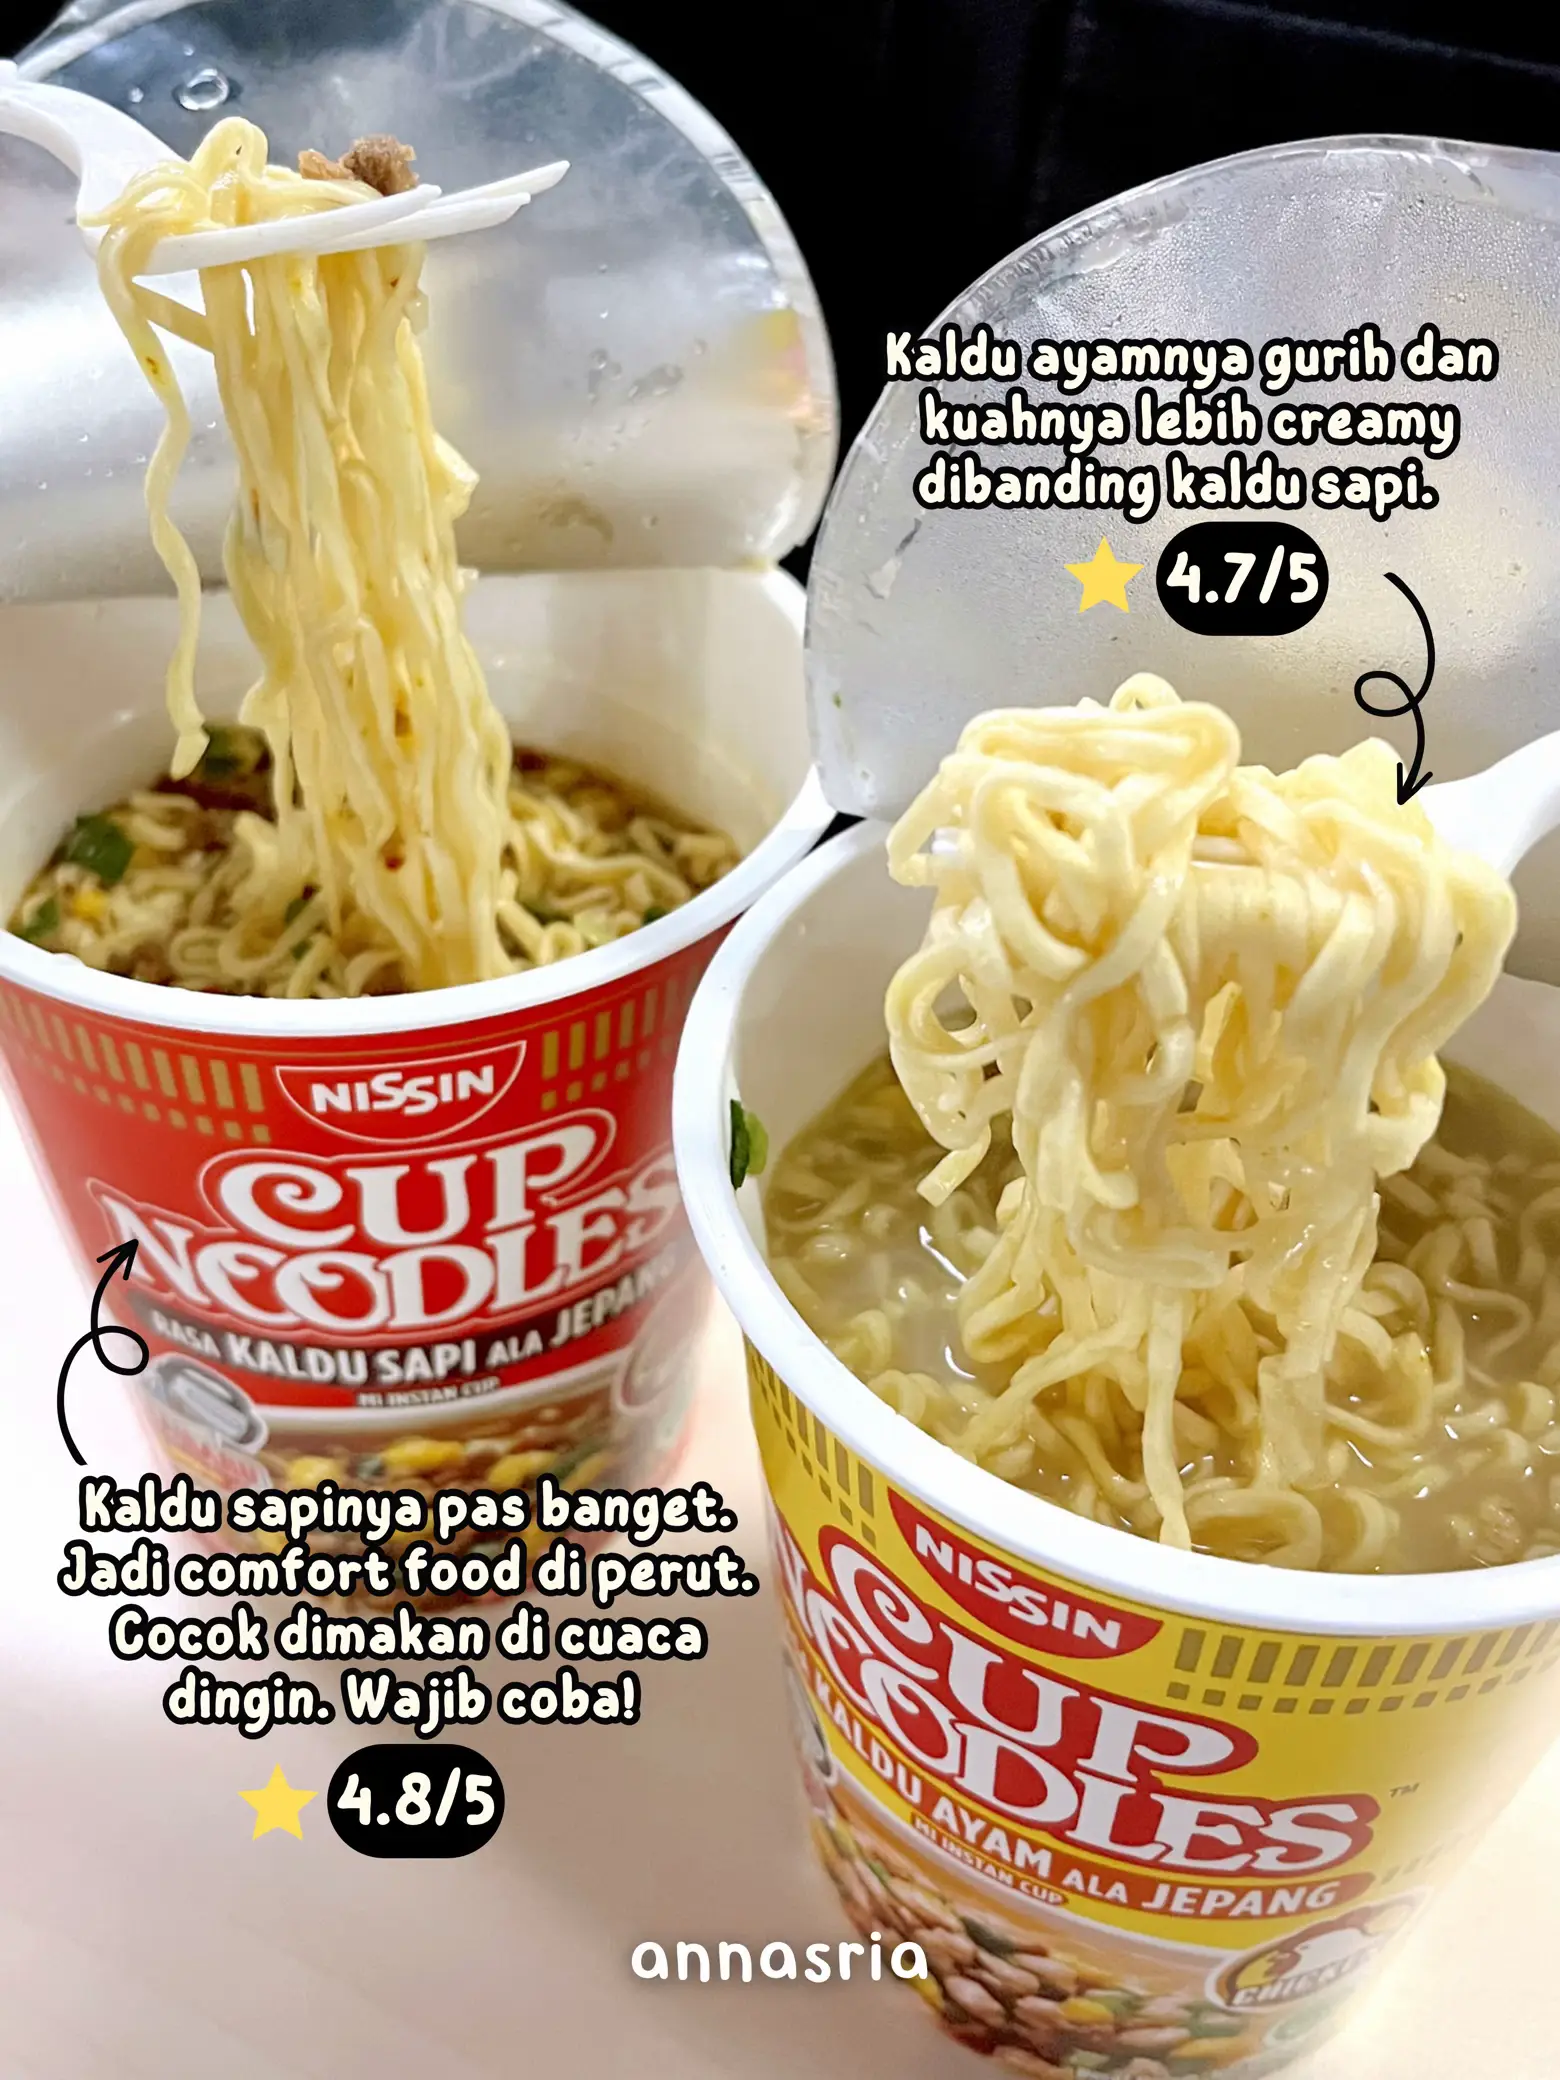 Nissin Instant Cup Noodles Kaldu Ayam 67g